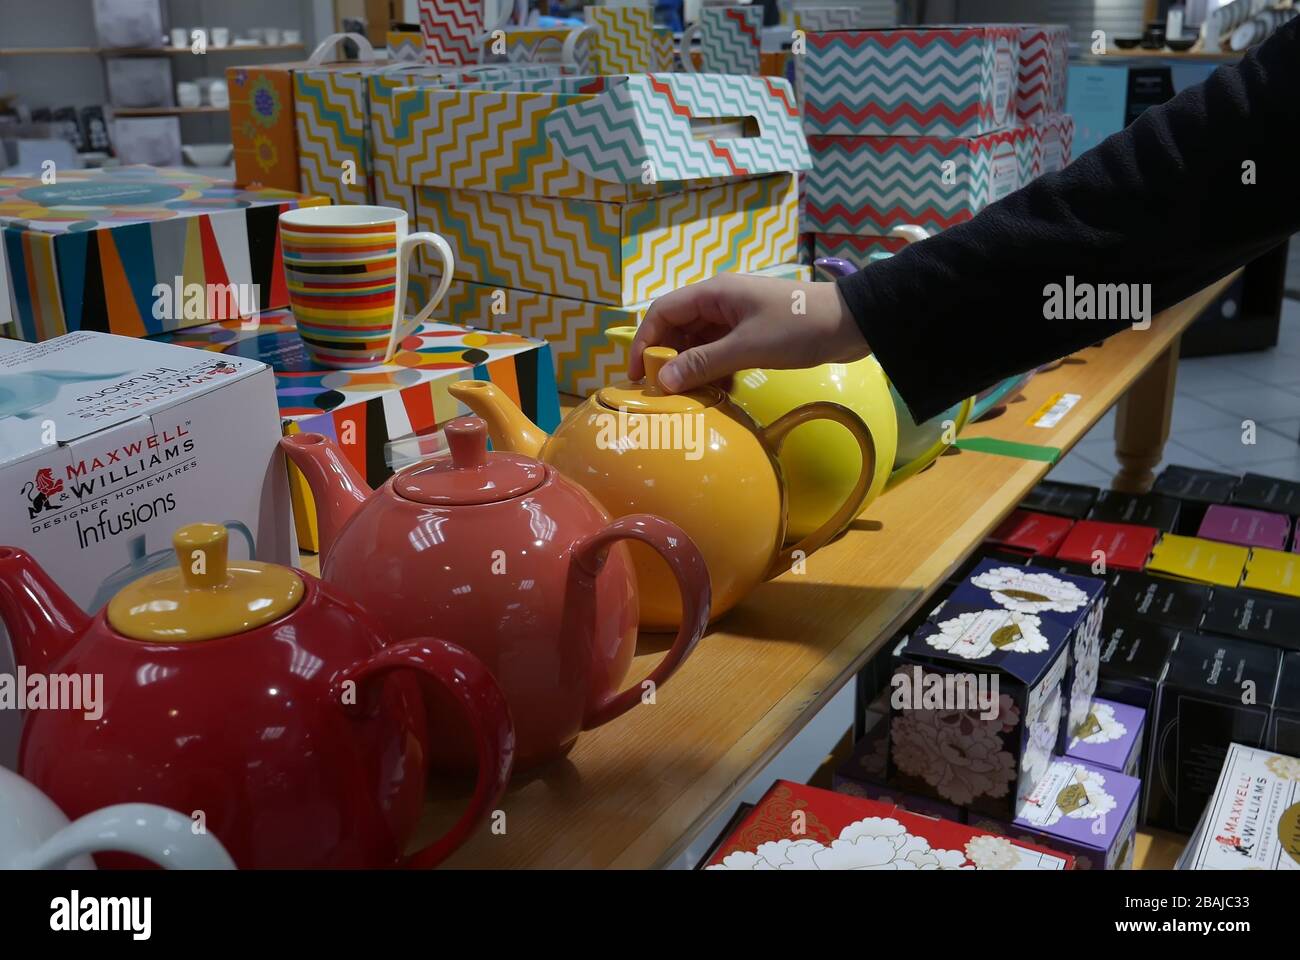 Giovane donna sta scegliendo il teapot nella sezione degli utensili all'interno del deposito della baia Foto Stock